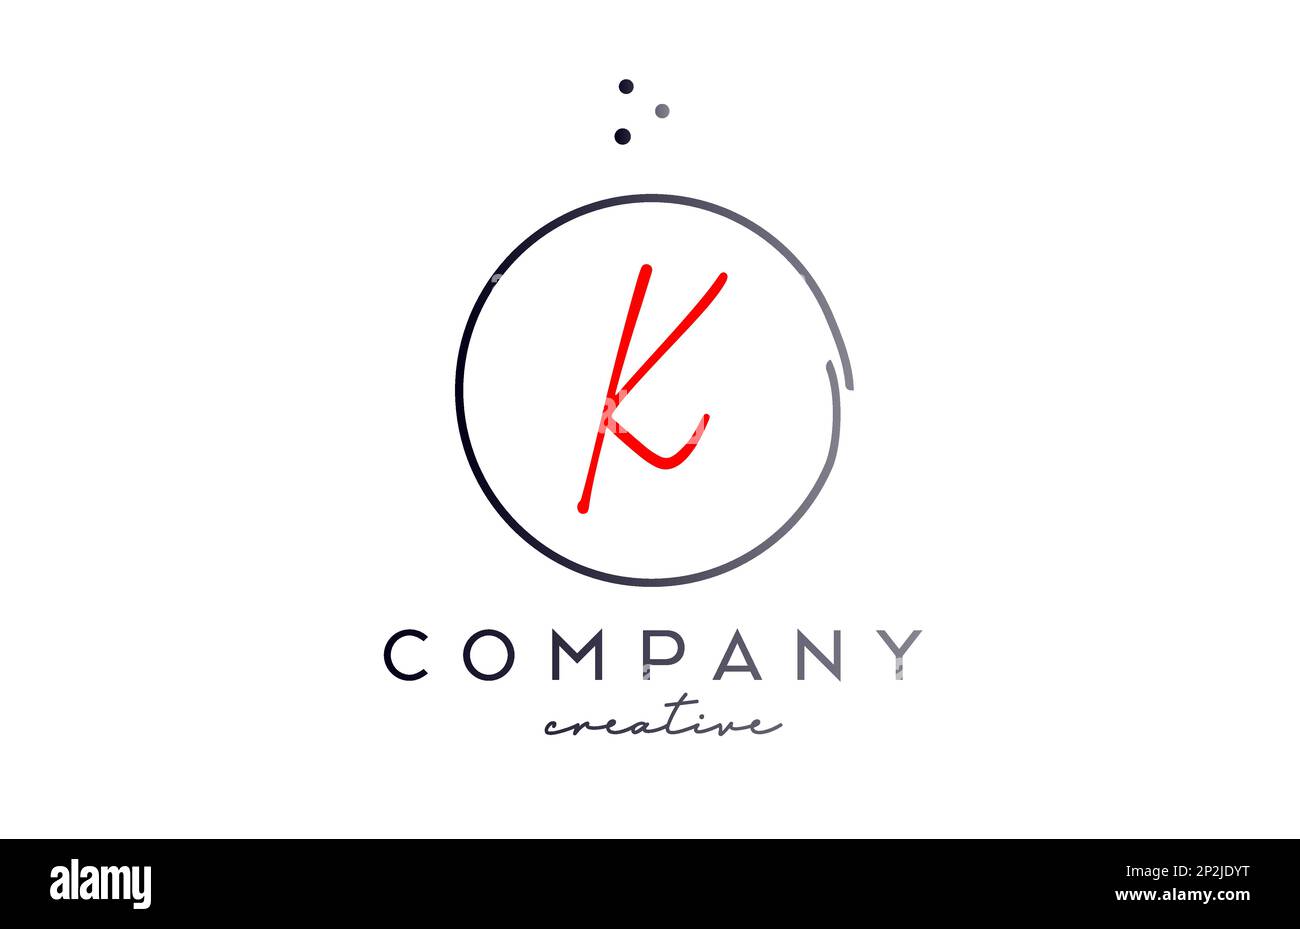 Logo circulaire lettre K manuscrite avec points et couleur rouge noire. Modèle de création d'entreprise pour les entreprises et les entreprises Illustration de Vecteur